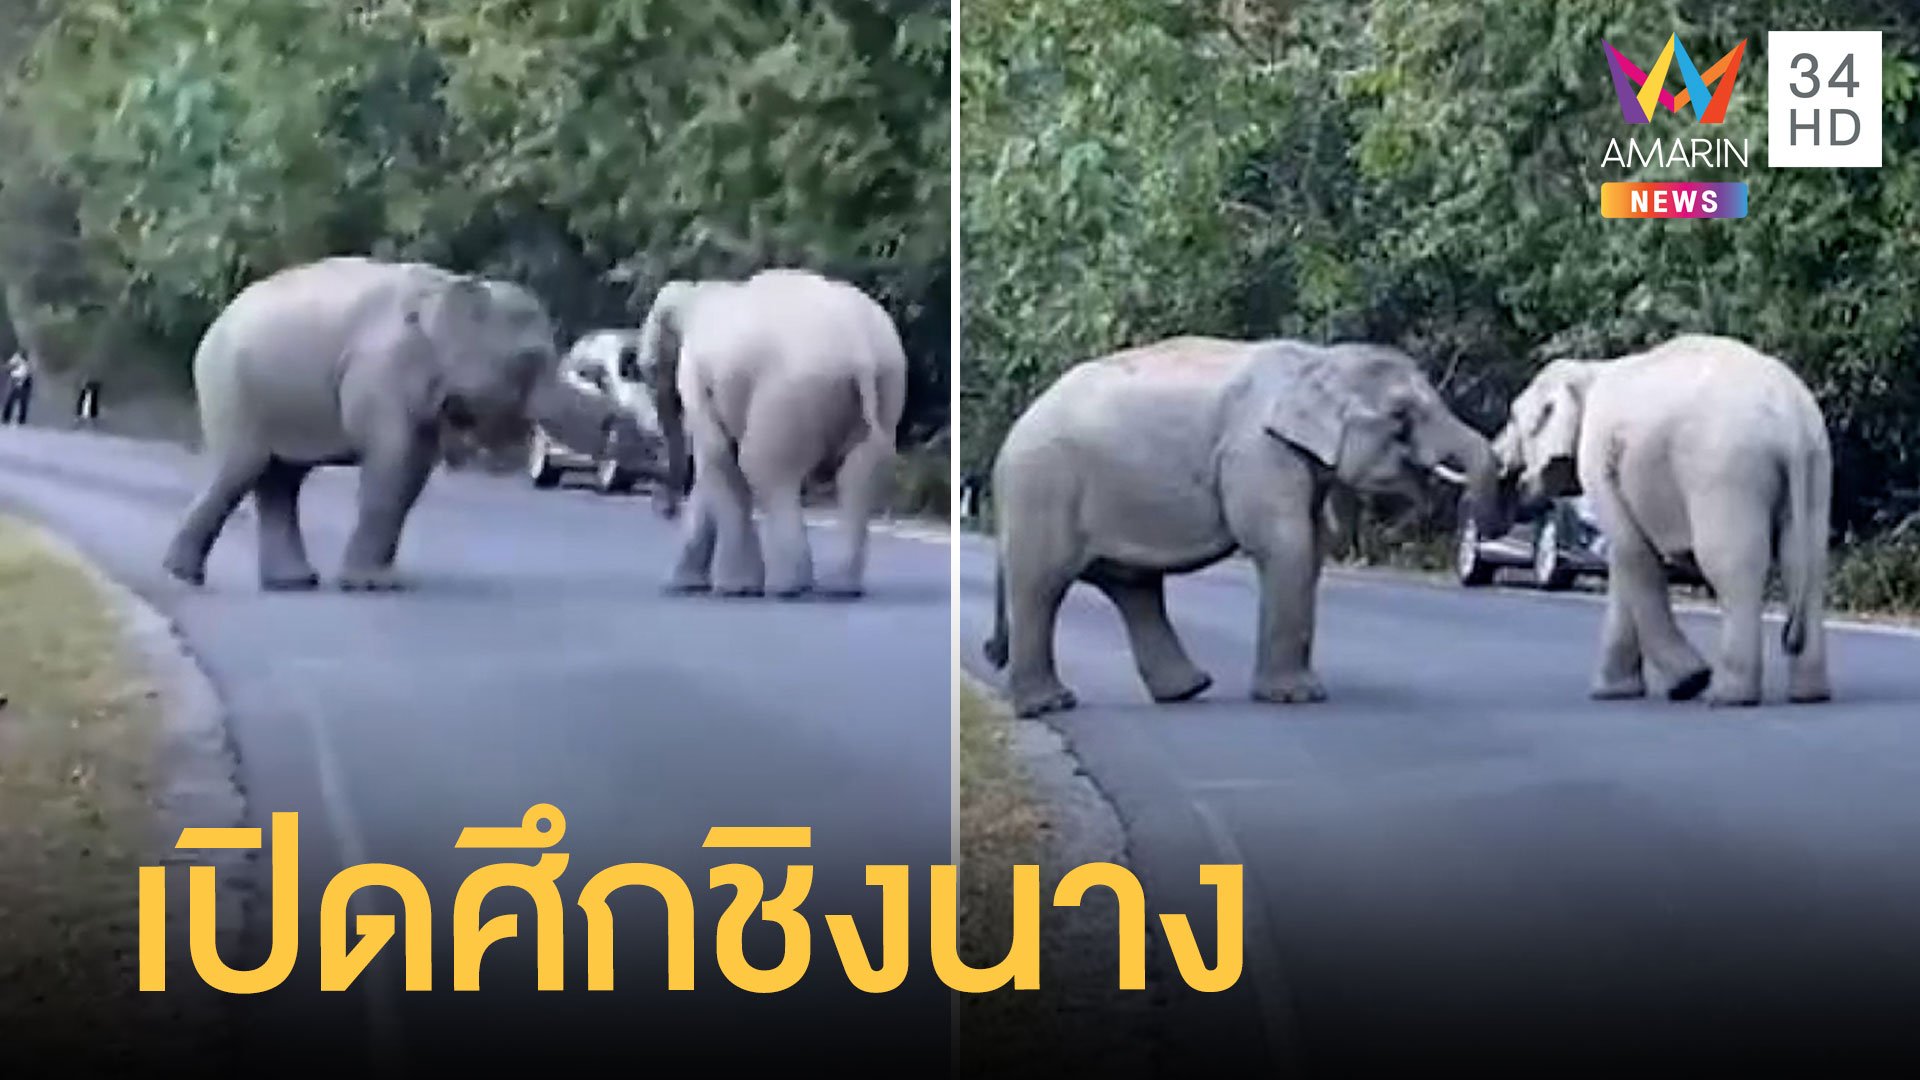 ระทึกช้างหนุ่มเขาใหญ่ เปิดศึกชิงนางกลางถนน | ข่าวอรุณอมรินทร์ | 5 ม.ค. 65 | AMARIN TVHD34